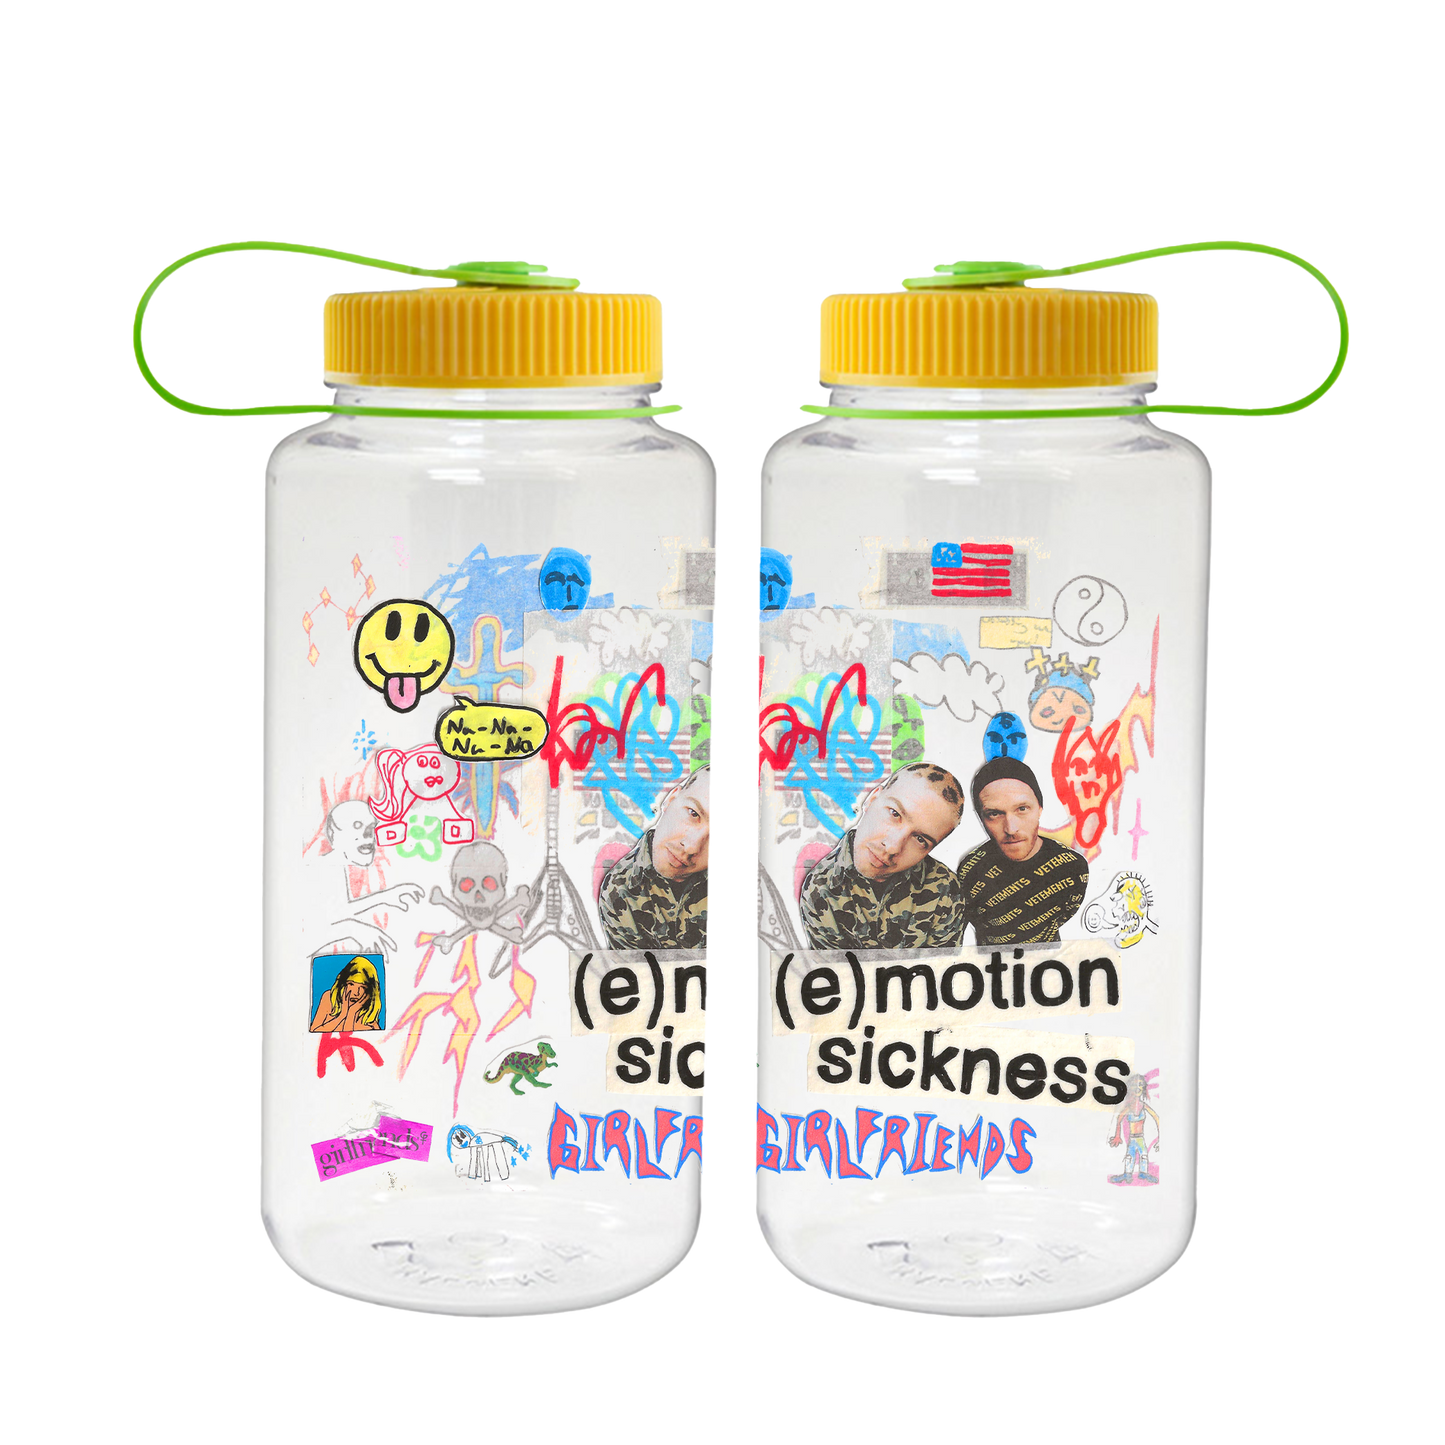 (e)motion sickness Nalgene water bottle